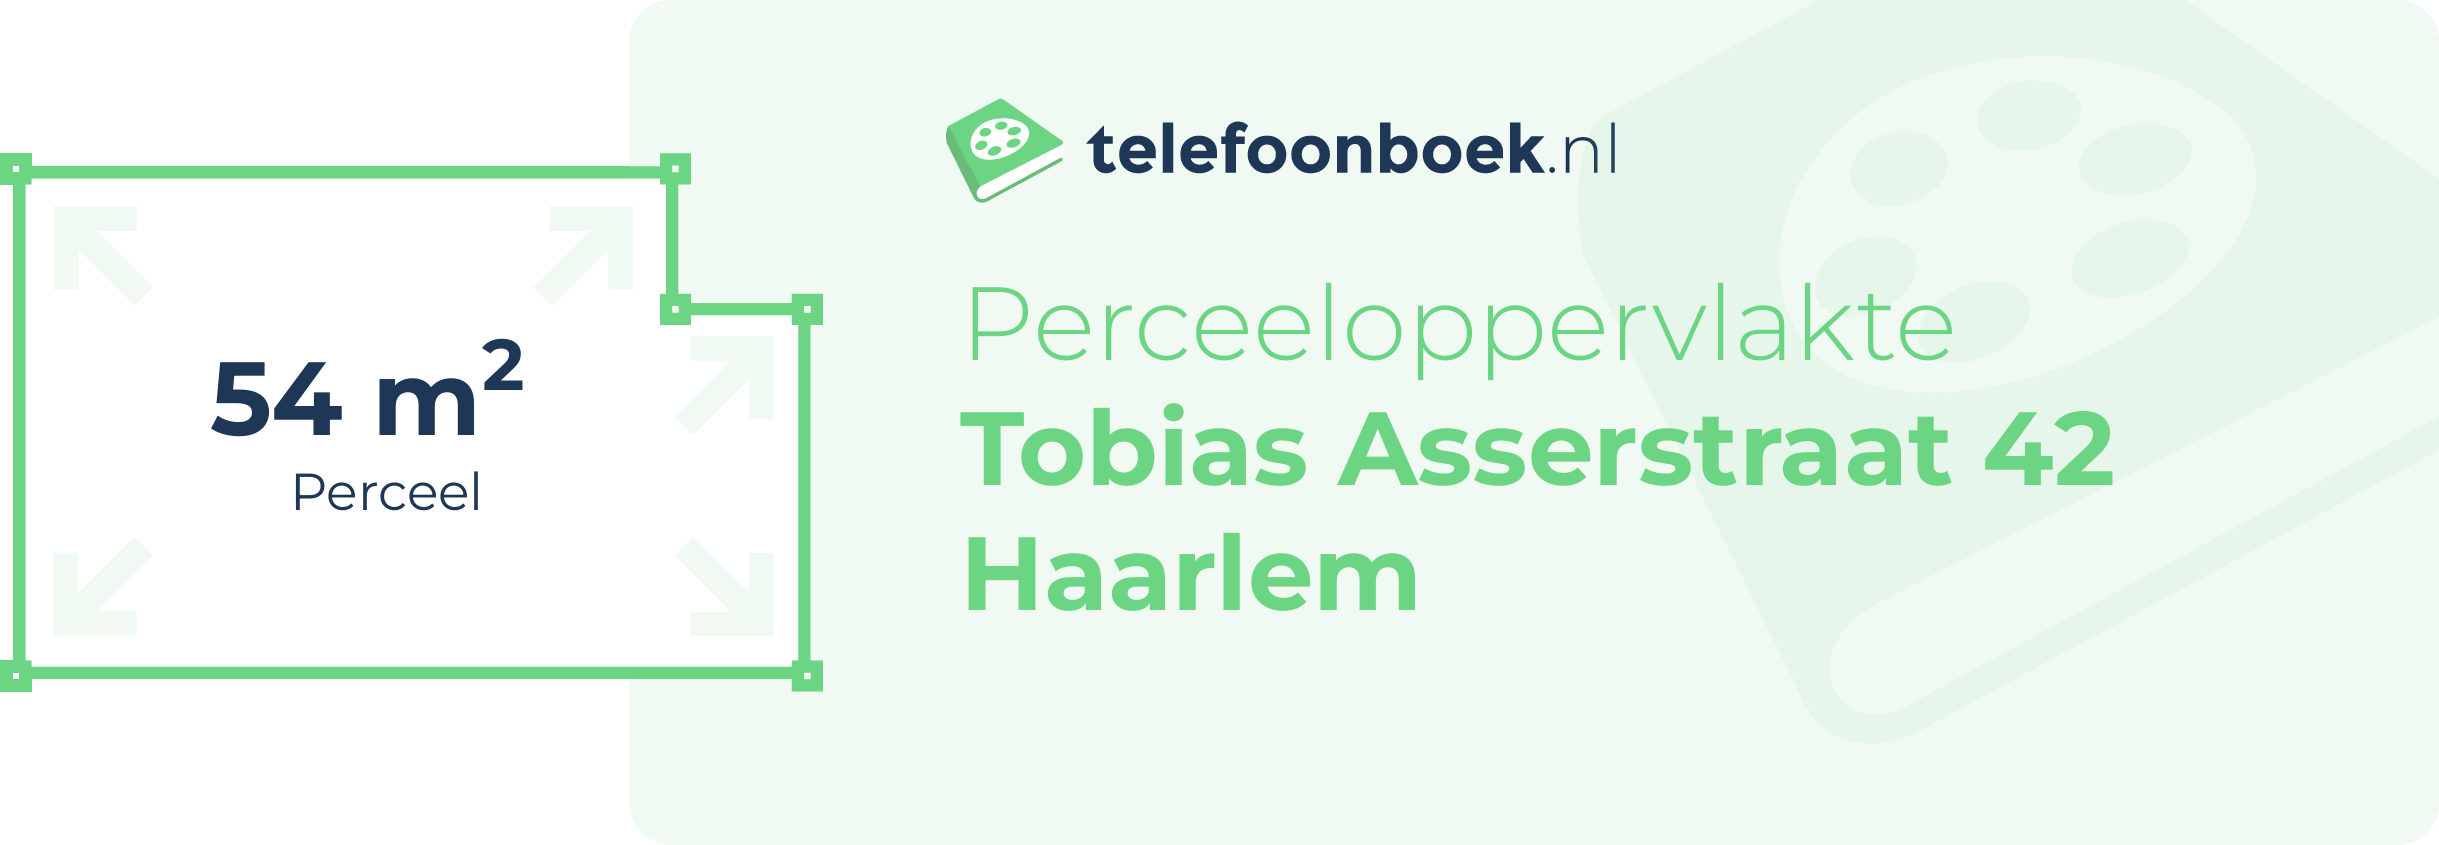 Perceeloppervlakte Tobias Asserstraat 42 Haarlem